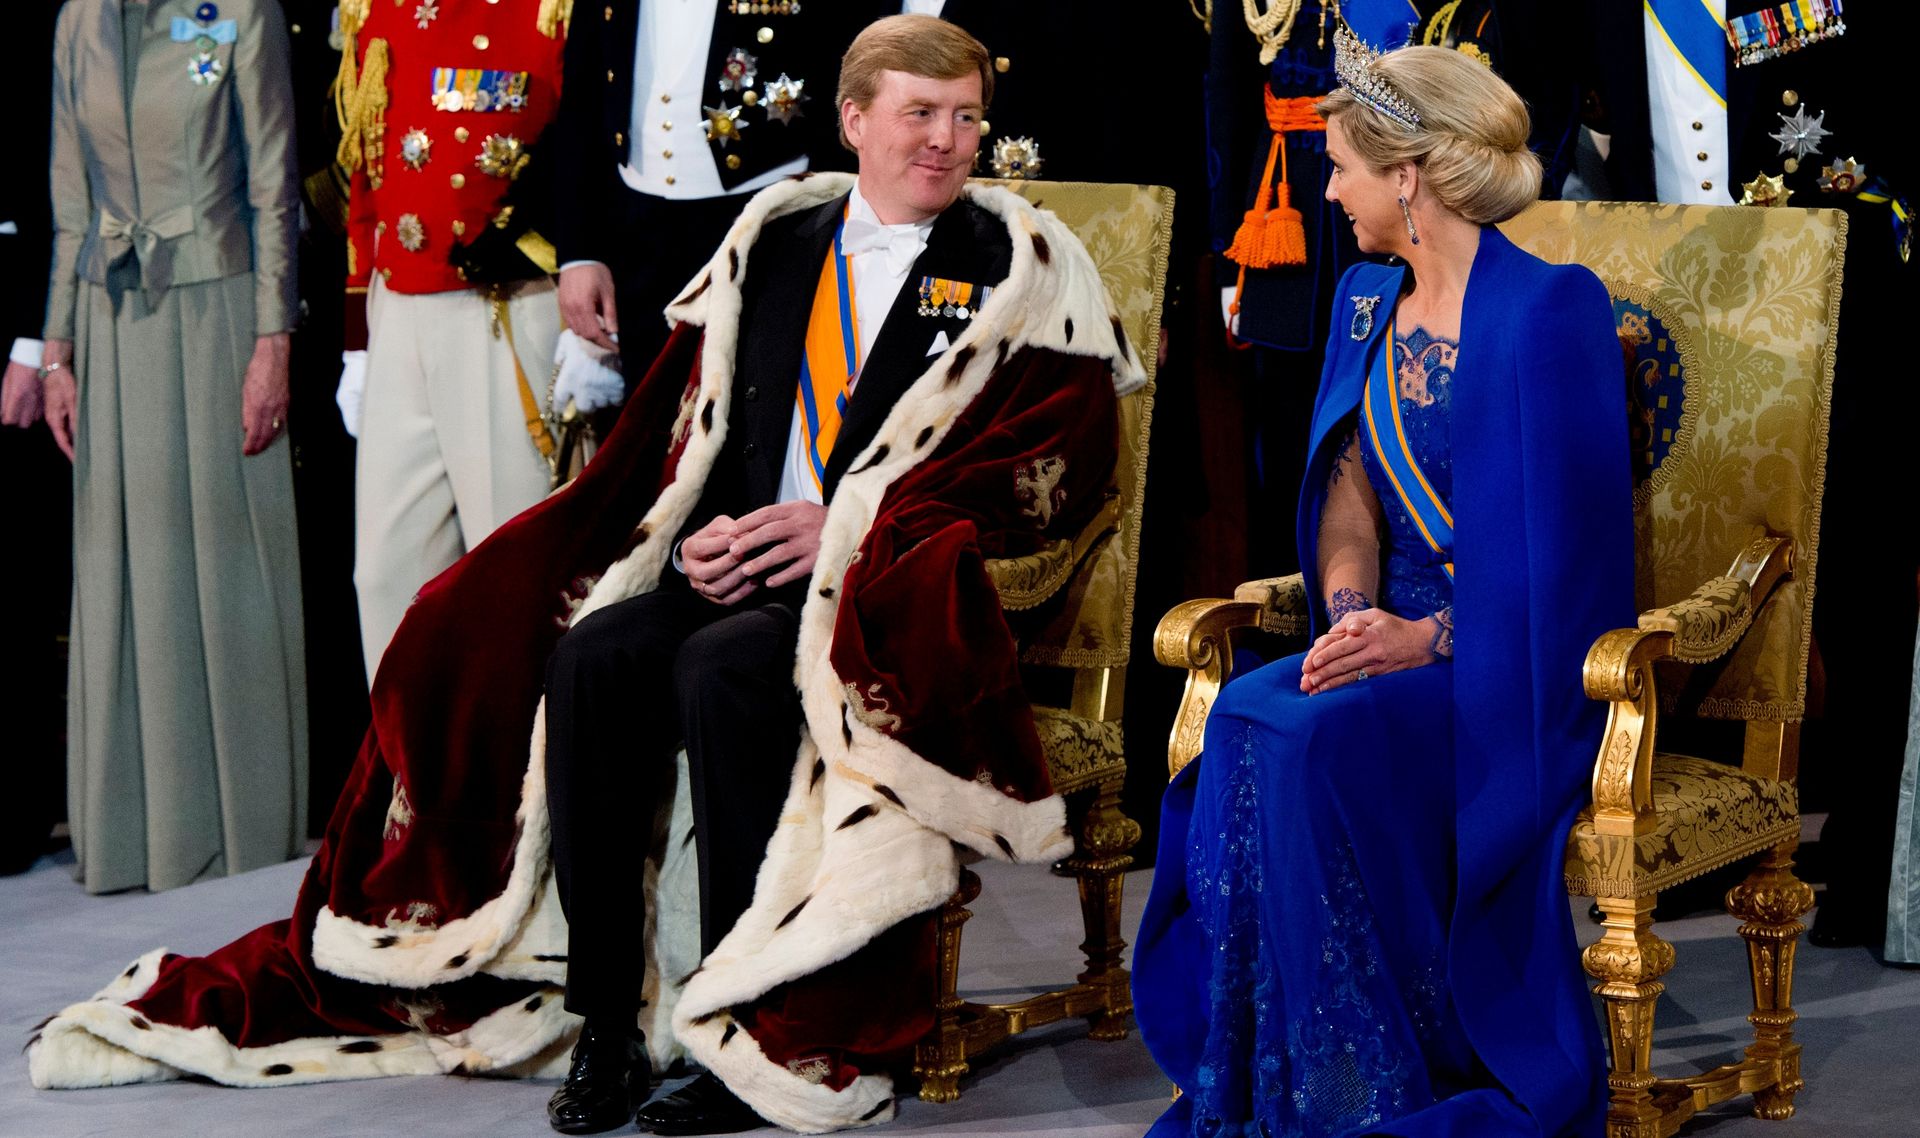 Koning Willem-Alexander en koningin Máxima tijdens de inhuldiging van de nieuwe vorst in De Nieuwe Kerk in Amsterdam (2013).